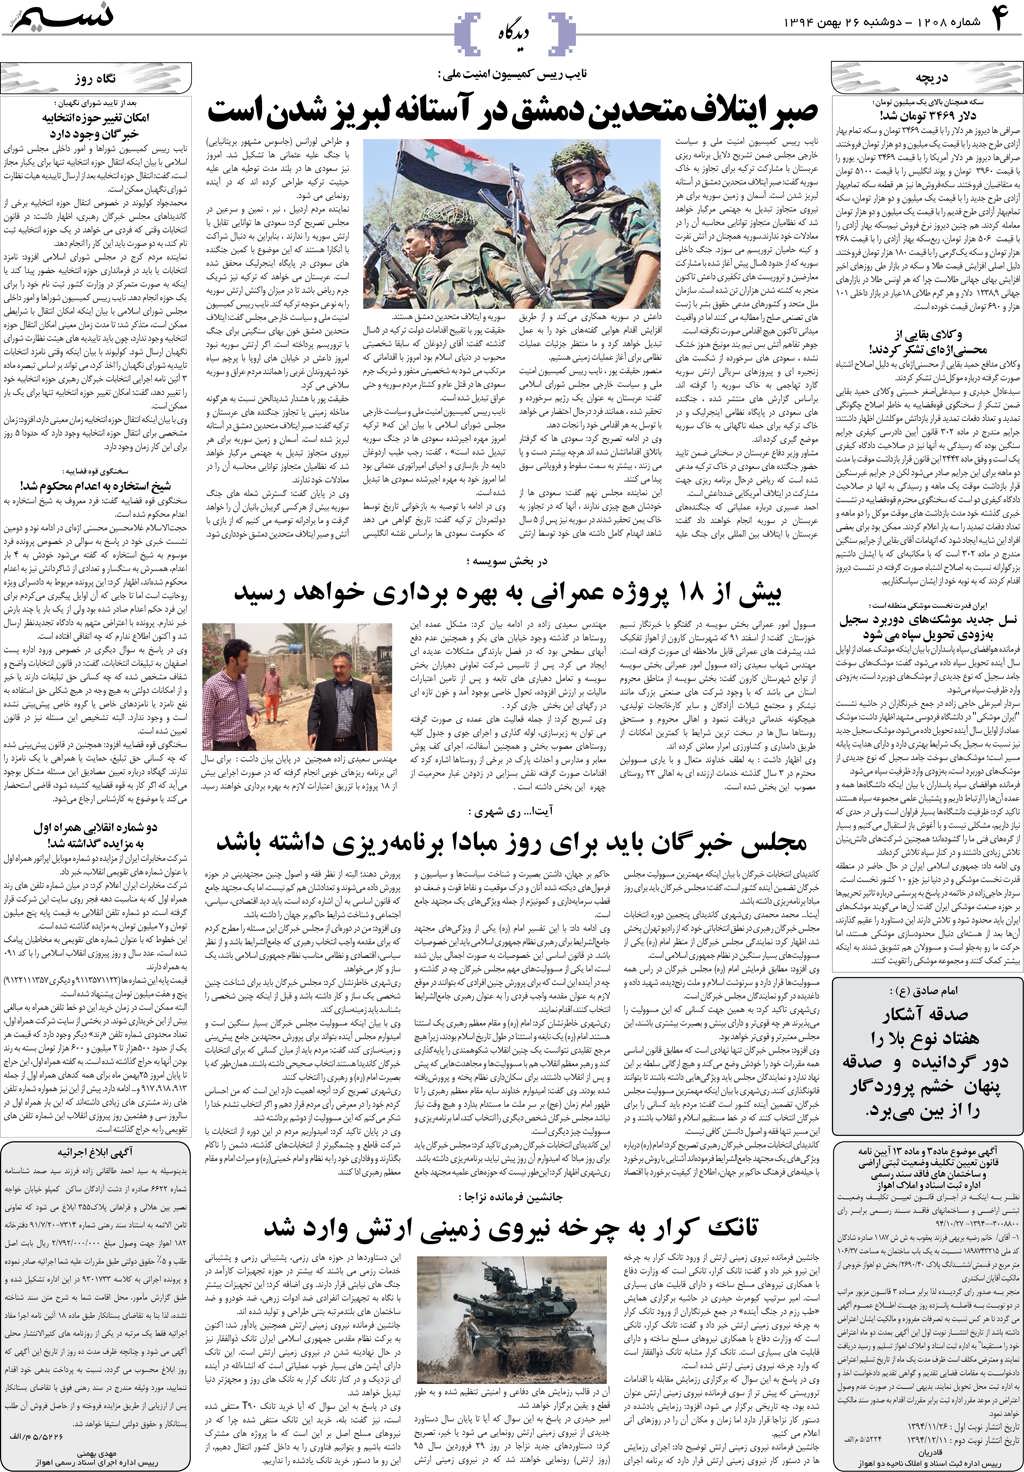 صفحه دیدگاه روزنامه نسیم شماره 1208